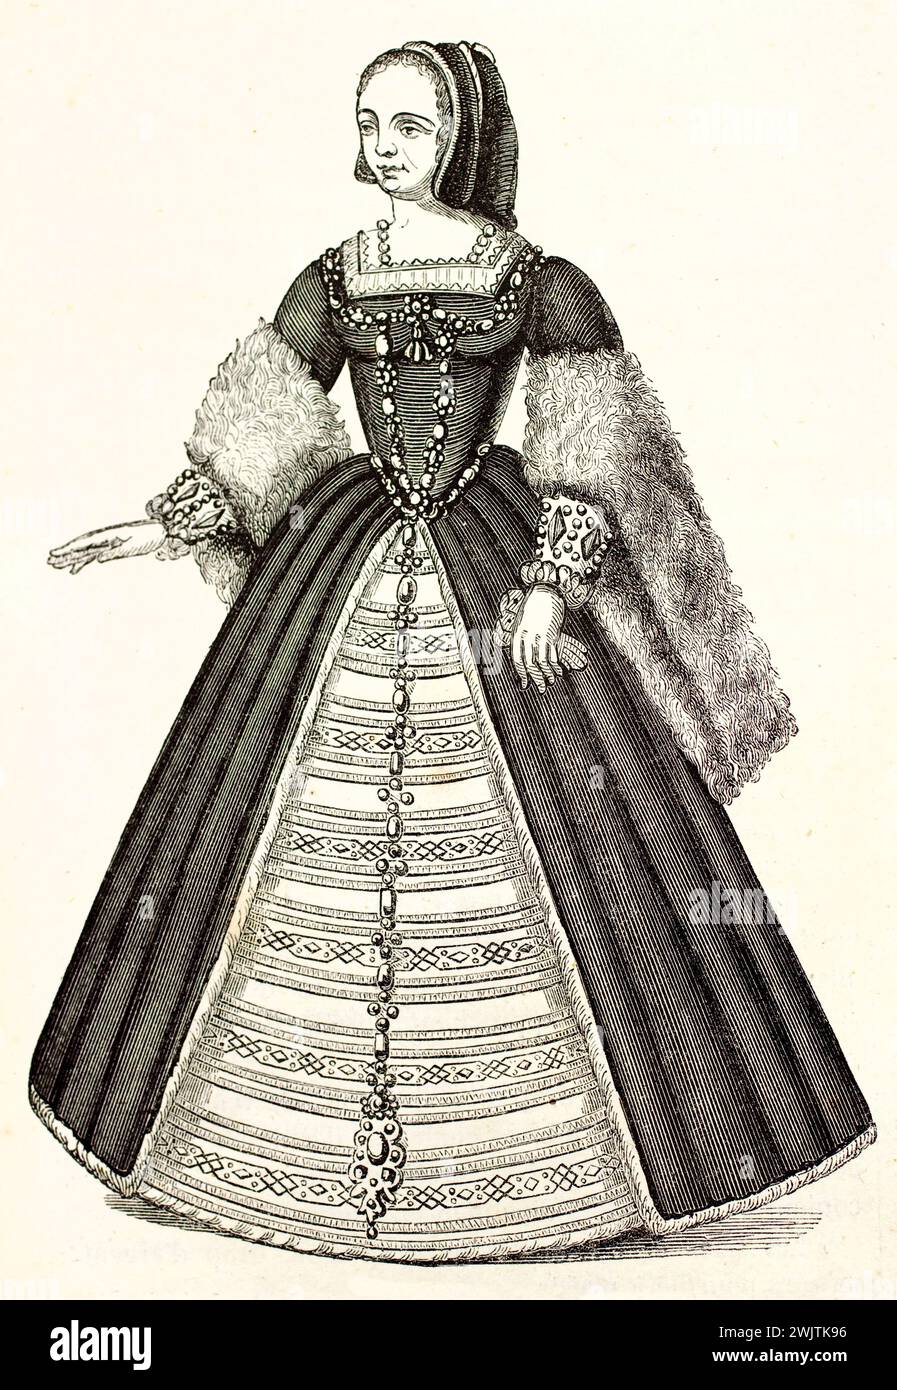 Alte gravierte Abbildung der Königin Claude de France (1499-1524). Nach Montfaucon-Sammlung, veröffentlicht auf magasin Pittoresque, Paris, 1852 Stockfoto